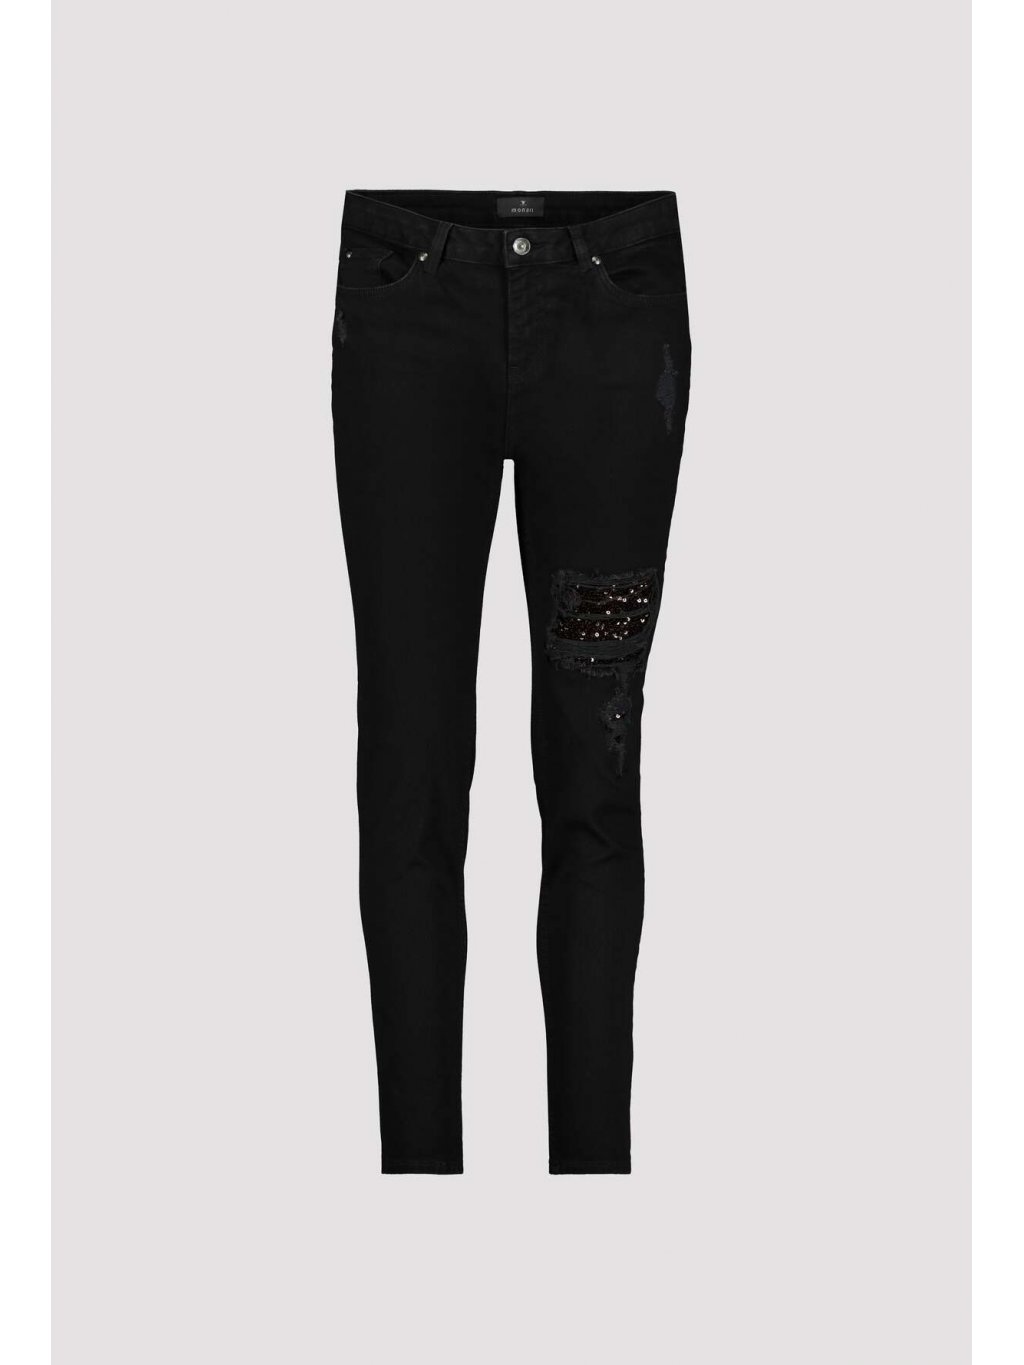 Kalhoty Monari 6132 černé džíny s aplikací